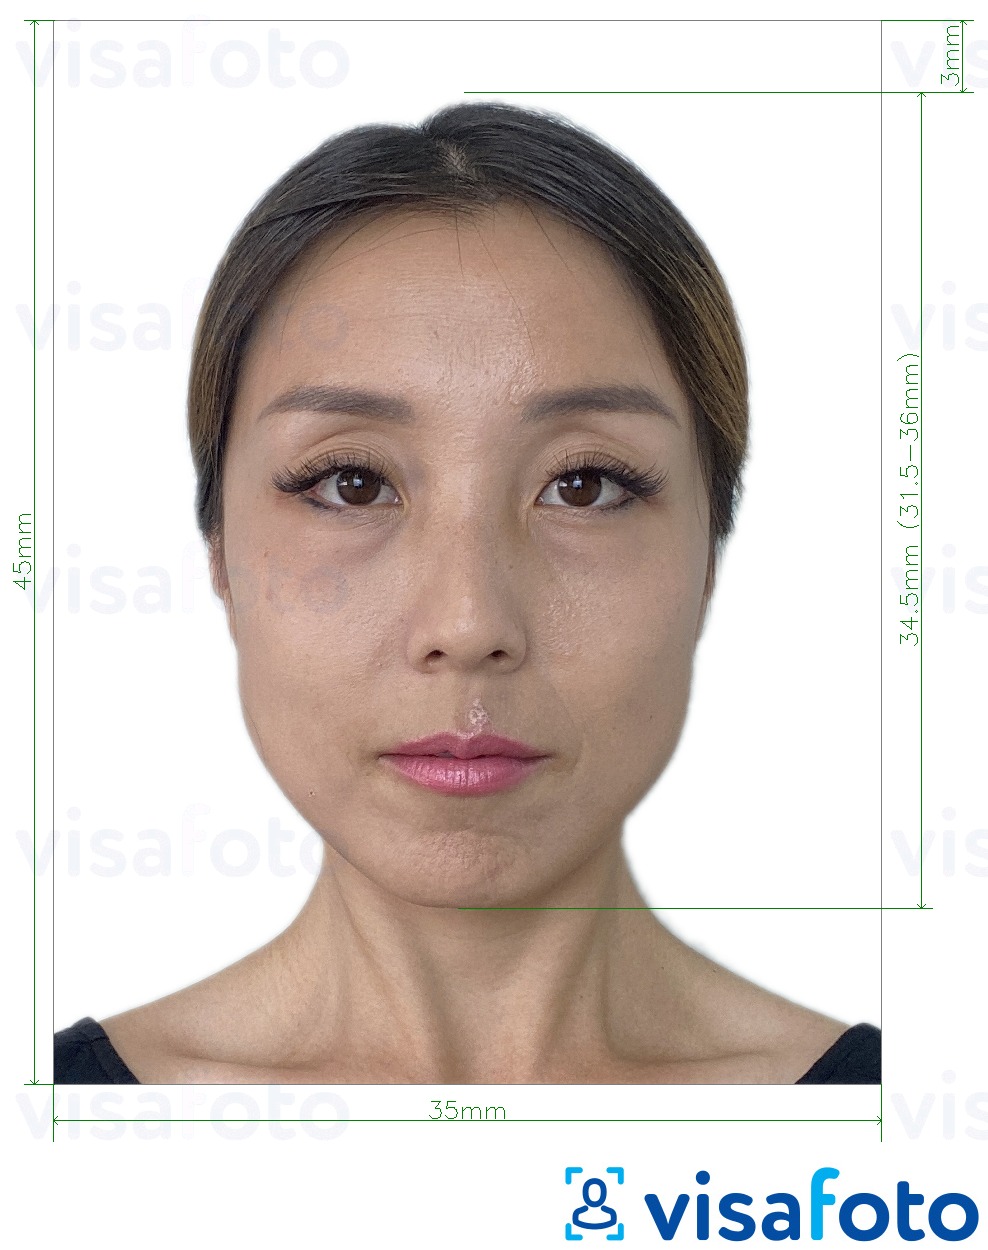 Contoh dari foto untuk Visa Taiwan 35x45 mm (3,5x4,5 cm) dengan ukuran spesifikasi yang tepat